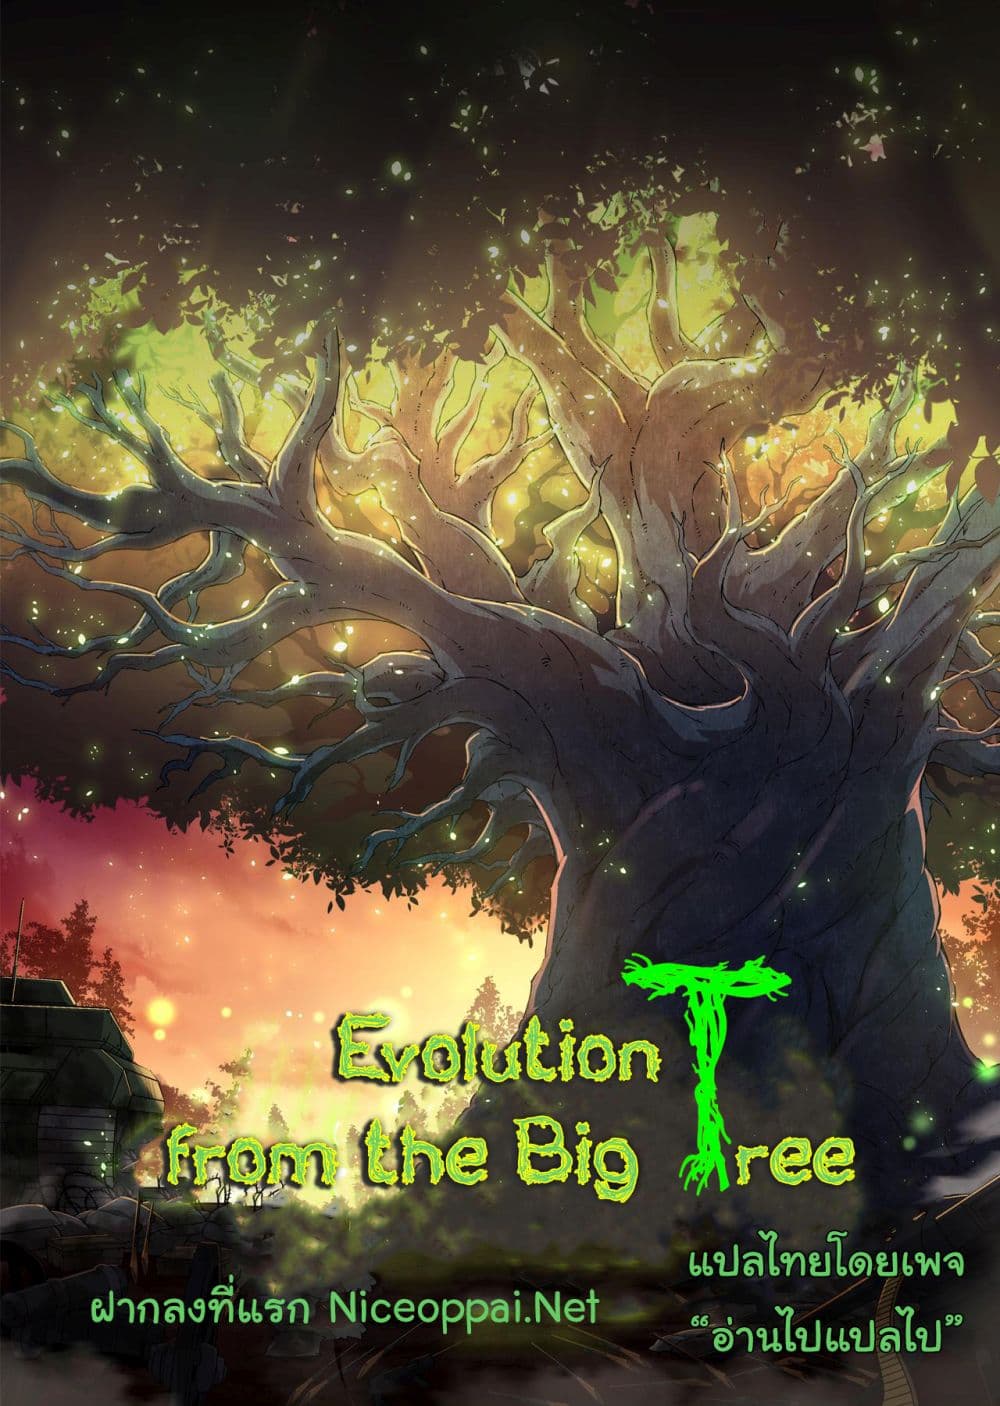 Evolution from the Big Tree Ã Â¸â€¢Ã Â¸Â­Ã Â¸â„¢Ã Â¸â€”Ã Â¸ÂµÃ Â¹Ë† 15 (1)